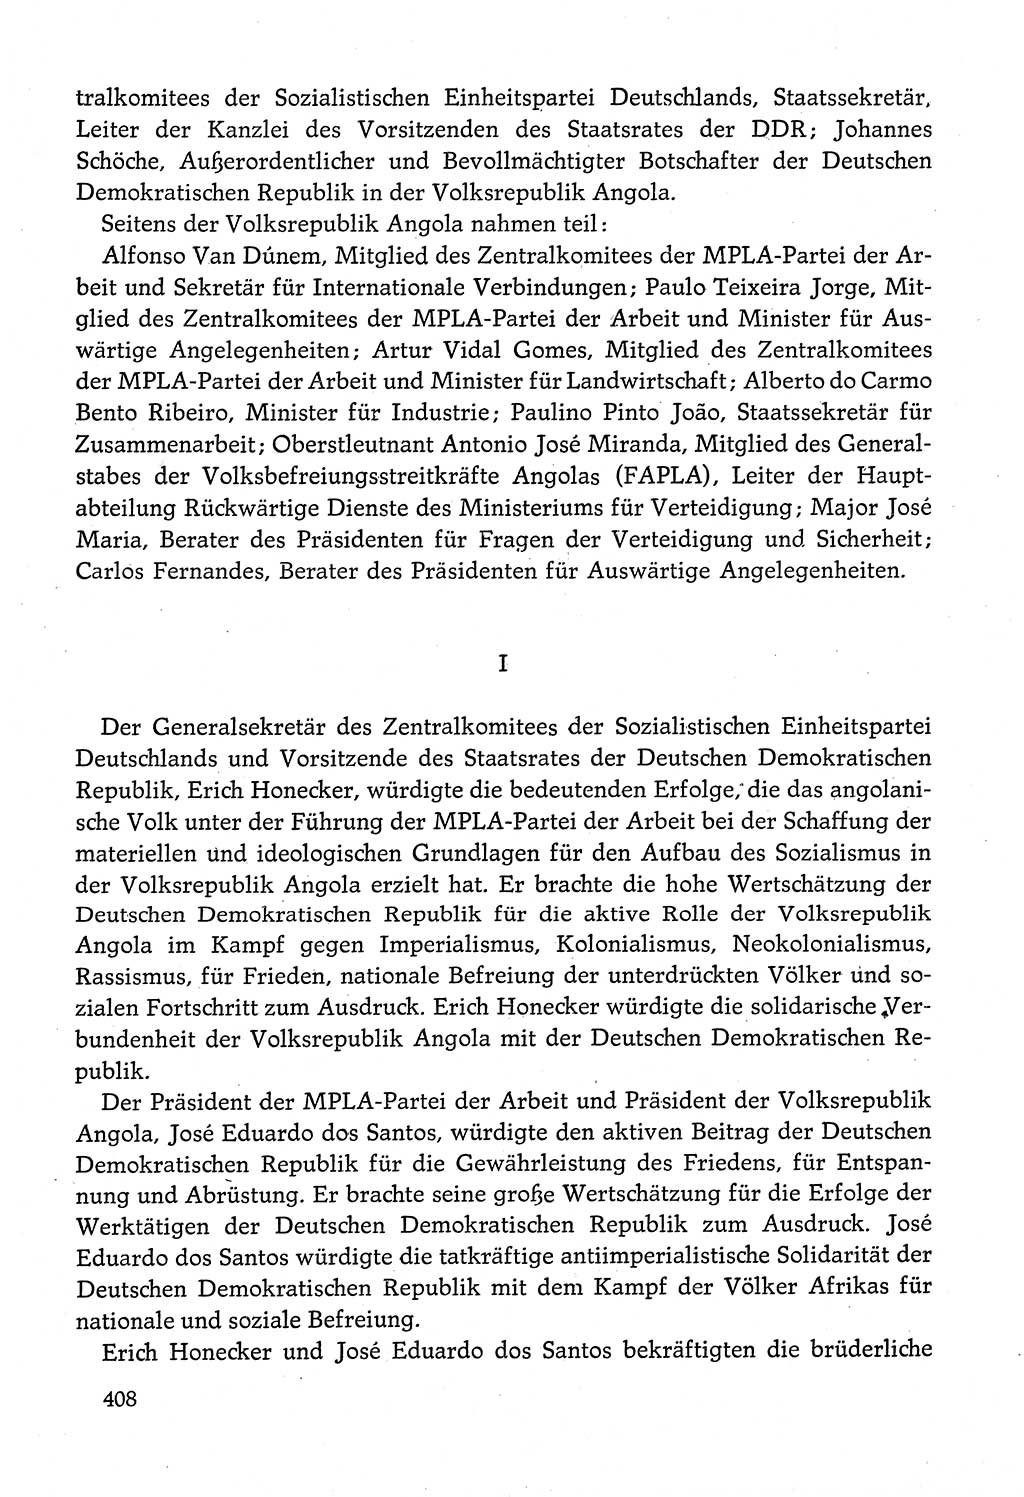 Dokumente der Sozialistischen Einheitspartei Deutschlands (SED) [Deutsche Demokratische Republik (DDR)] 1980-1981, Seite 408 (Dok. SED DDR 1980-1981, S. 408)